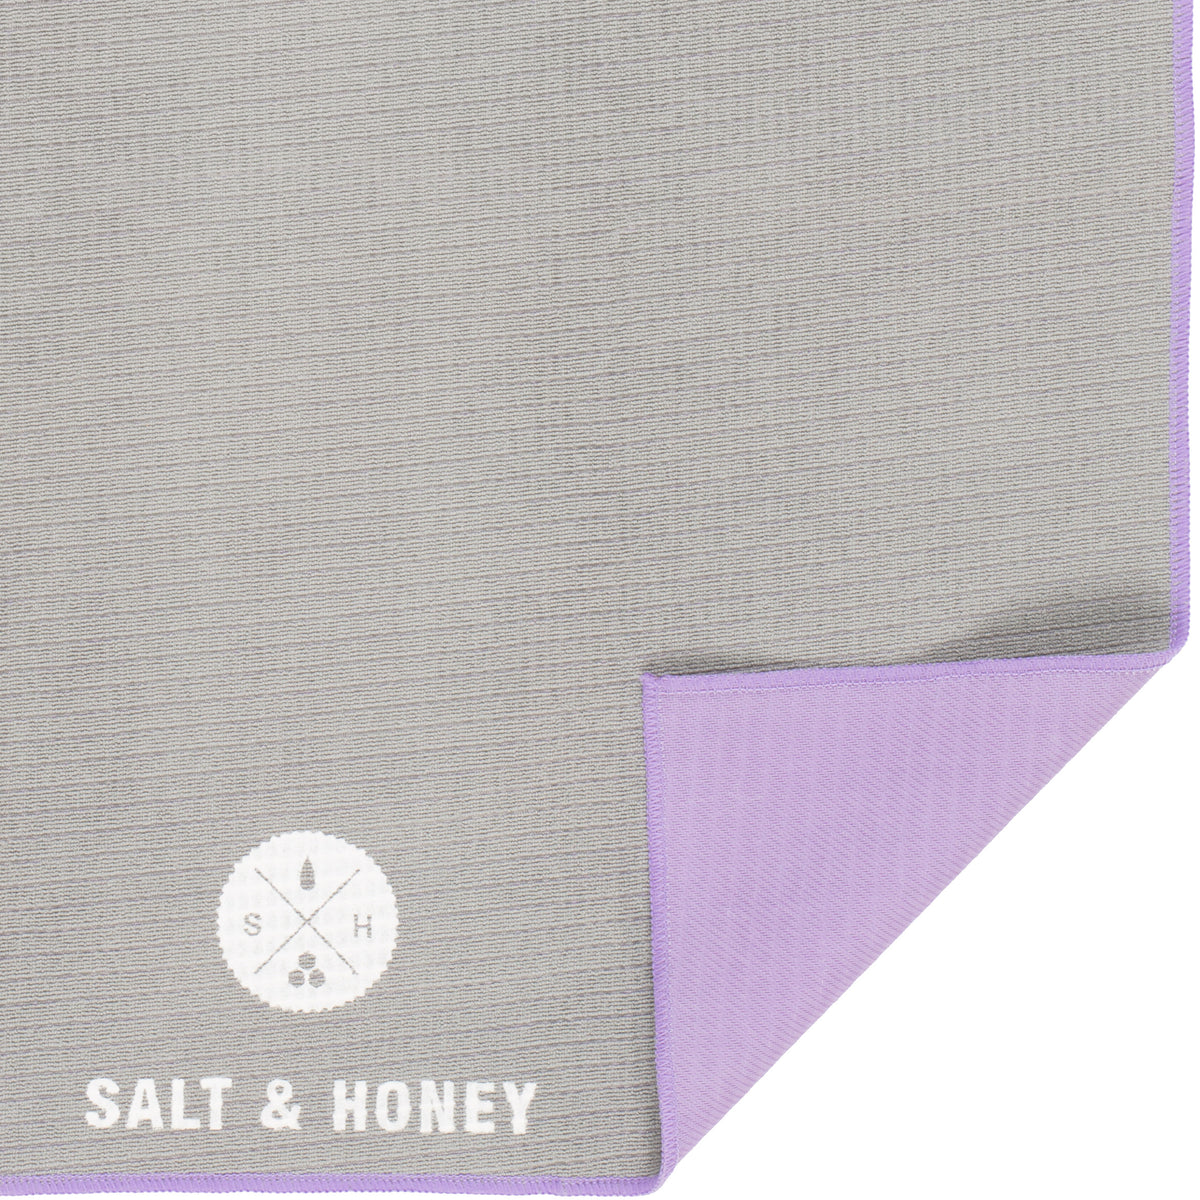 Buy 2 Save 15% – Salt & Honey - Non-Slip Pilates Reformer Towel